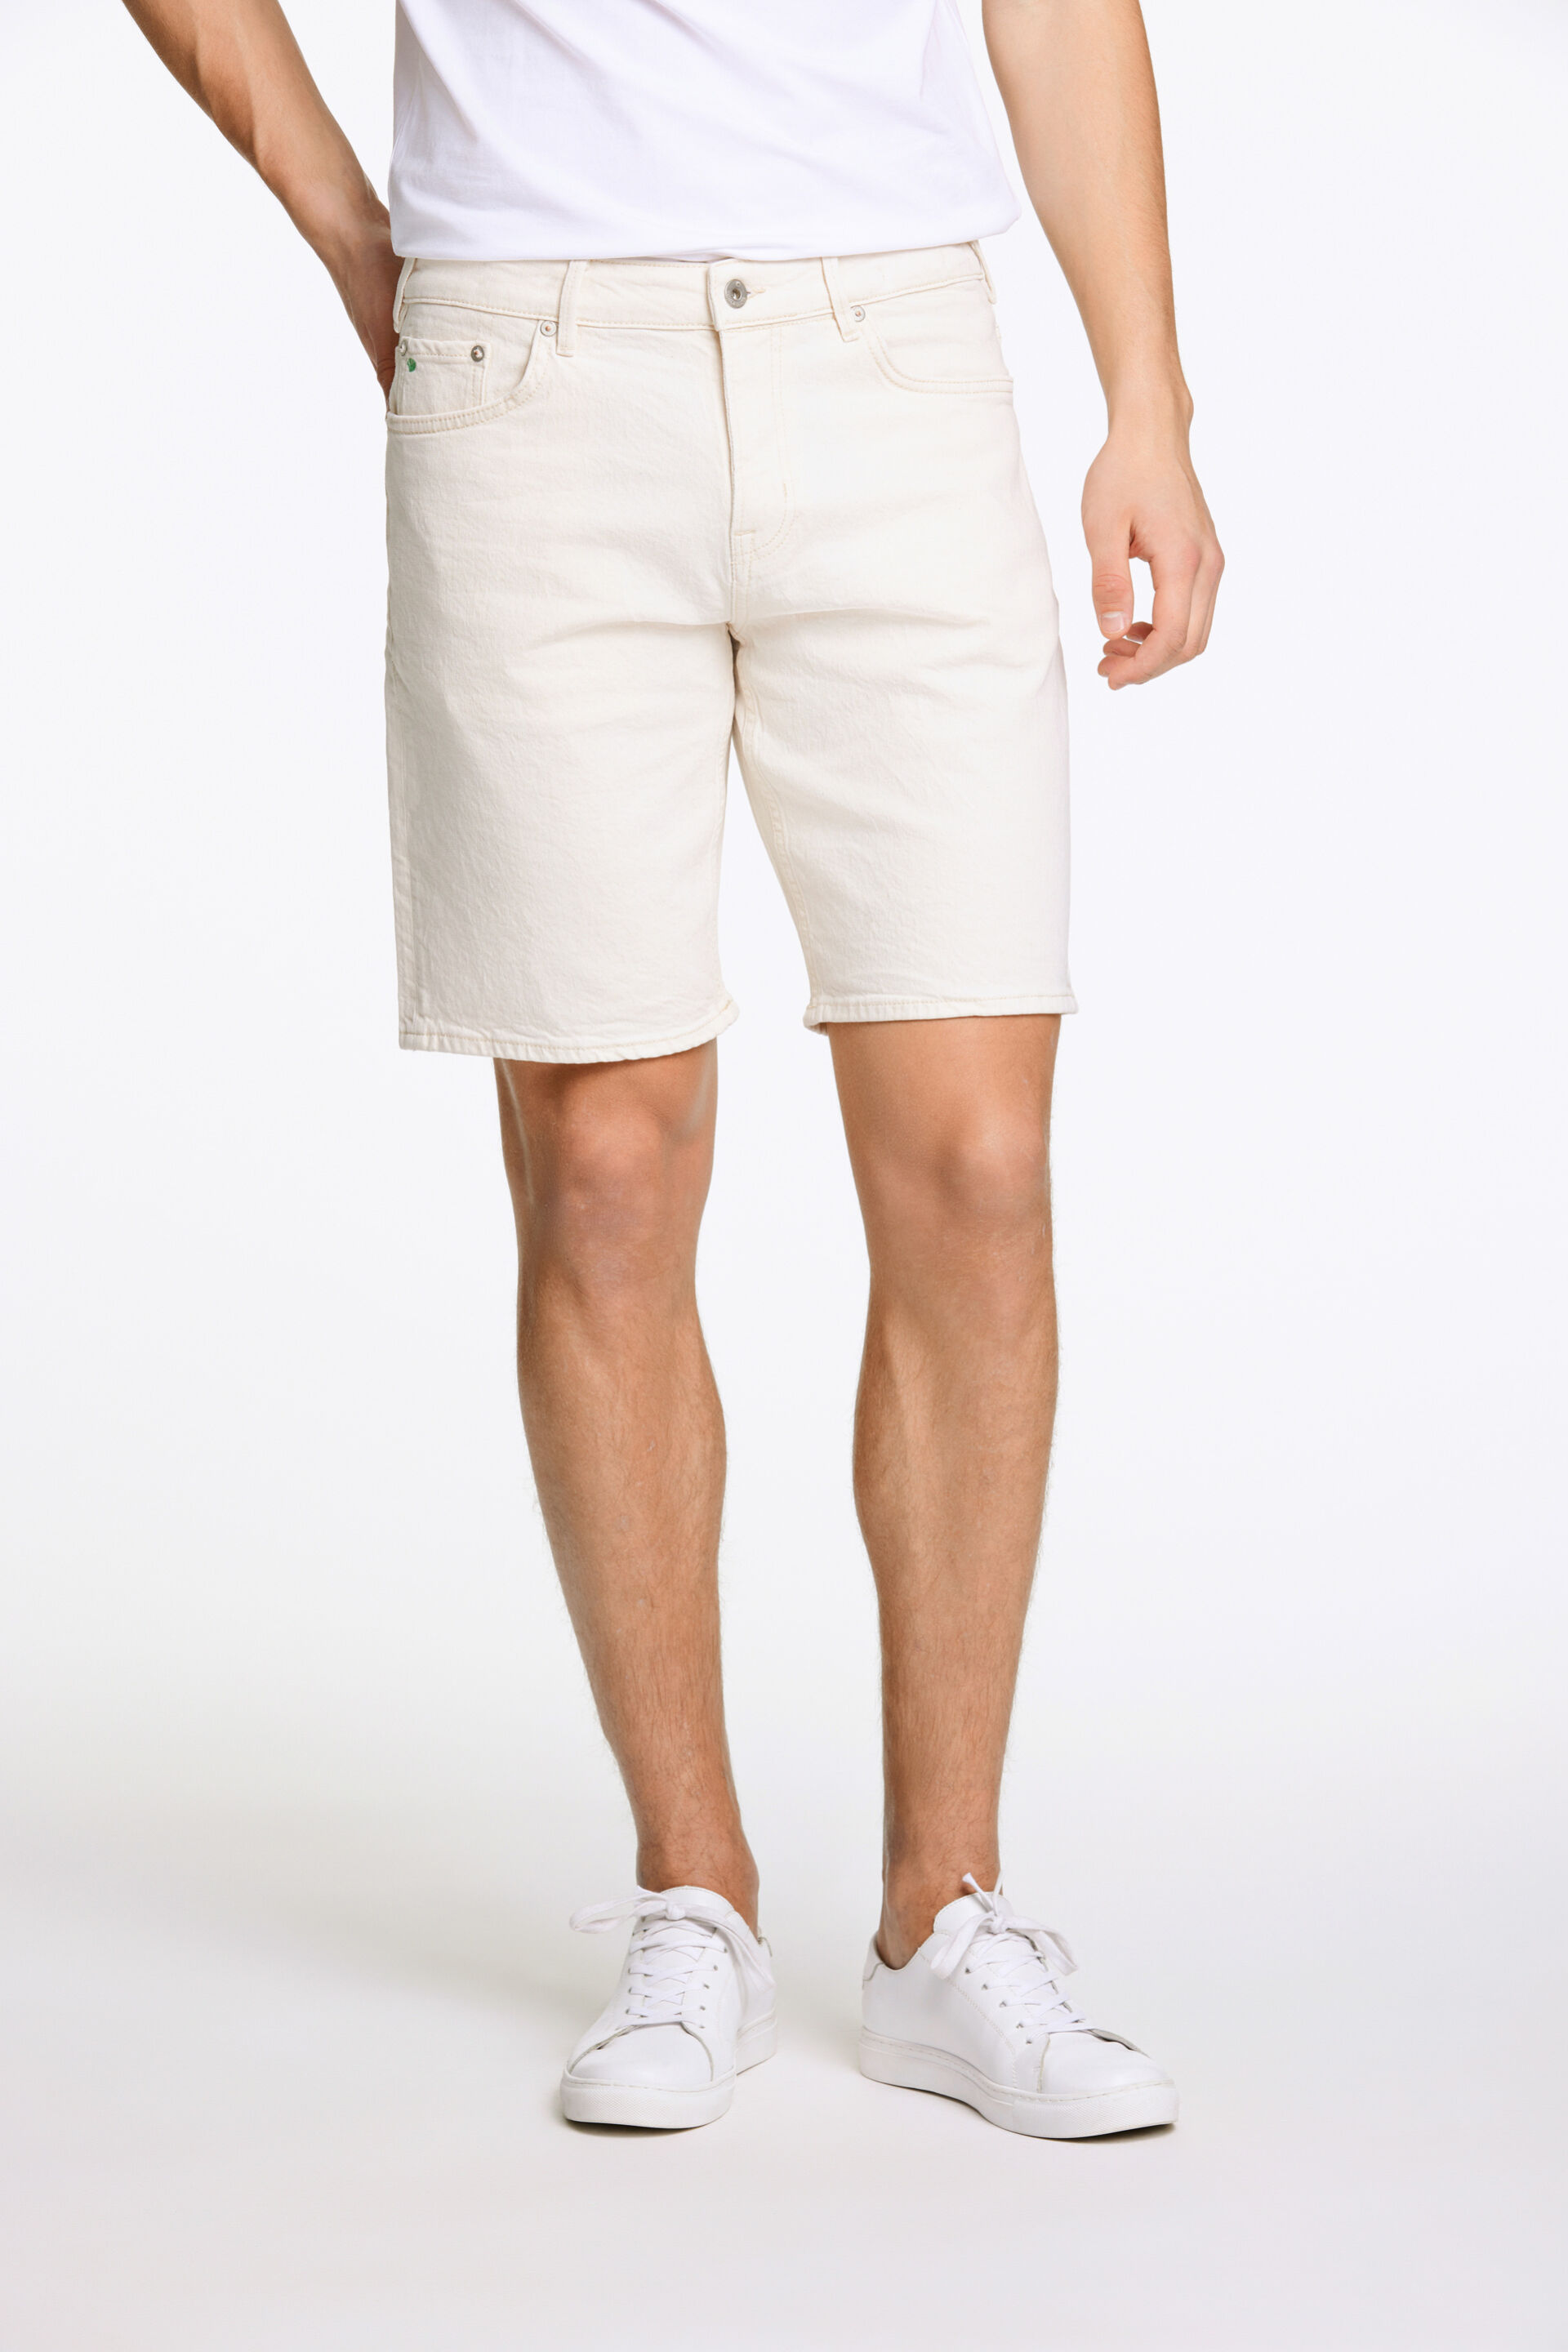 Junk de Luxe  Casual shorts Hvid 60-502019